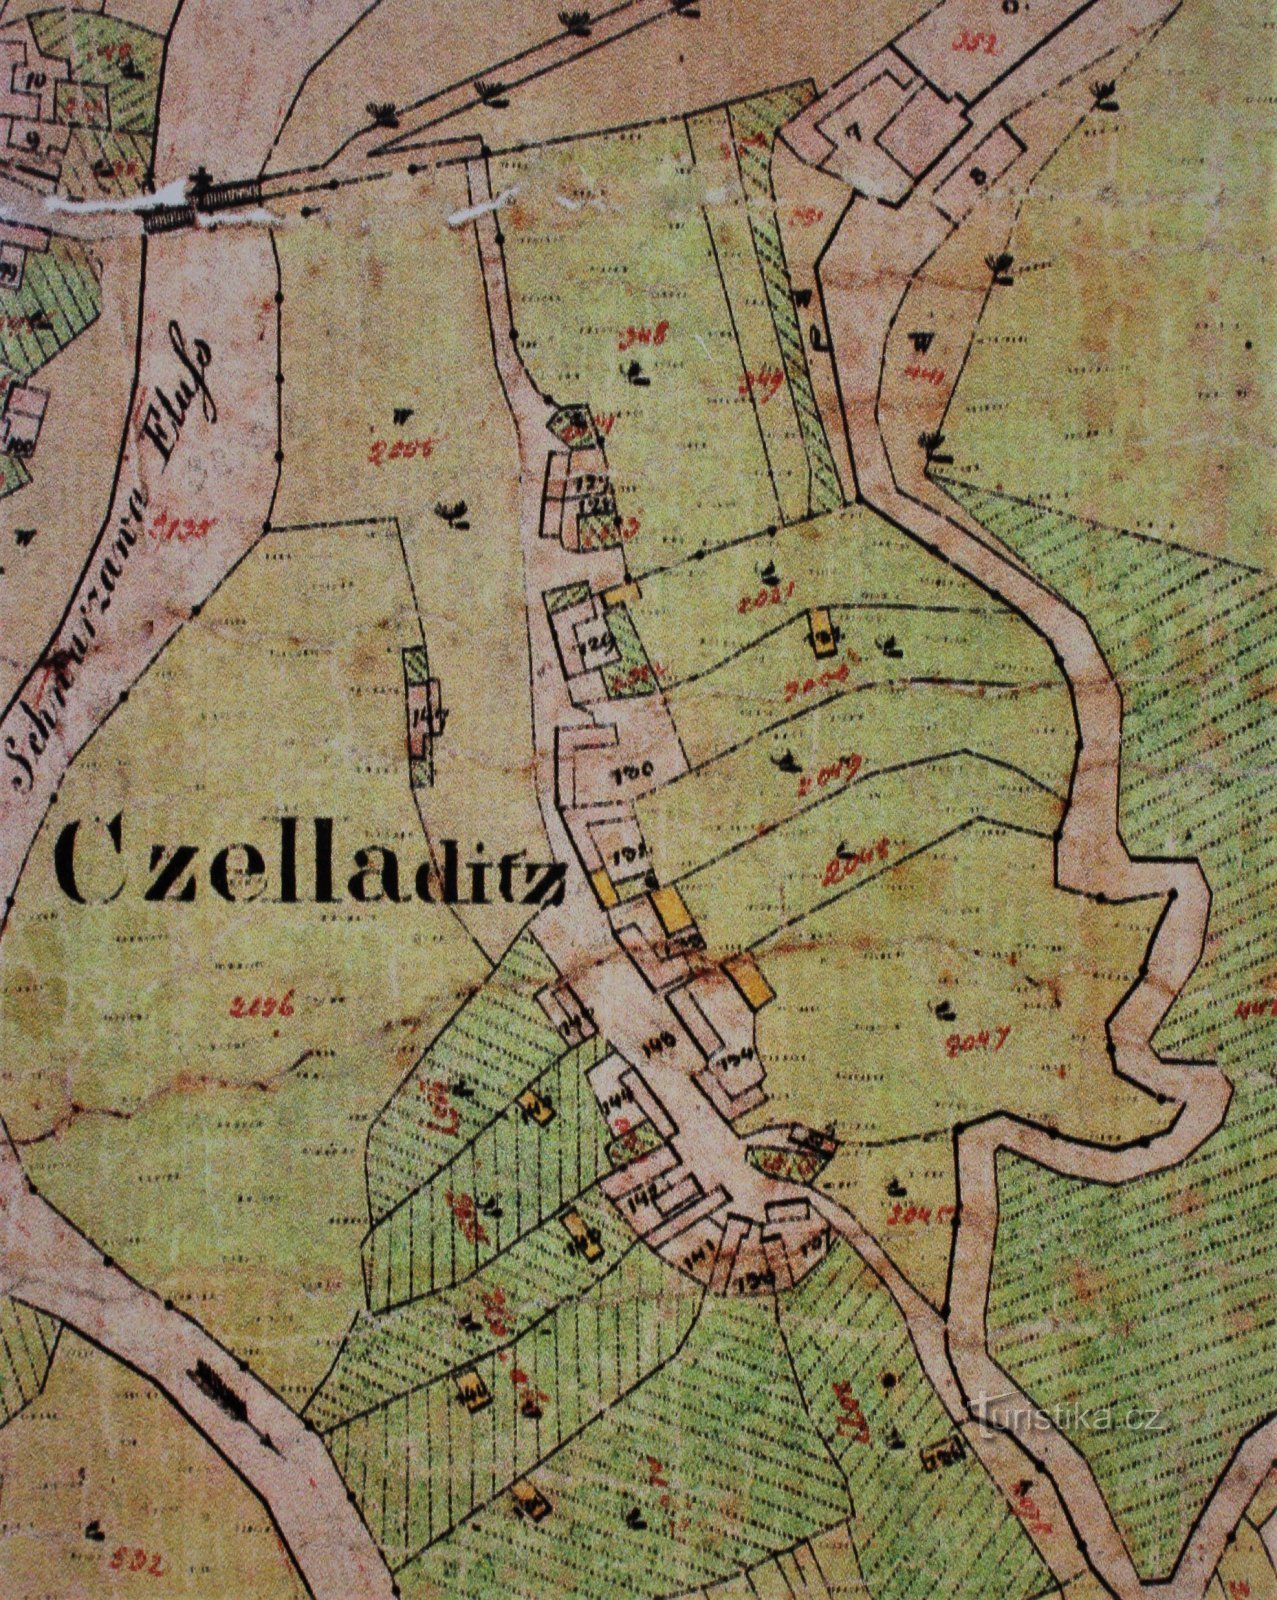 Čeladice térképe 1825-ből (az információs tábláról készült)